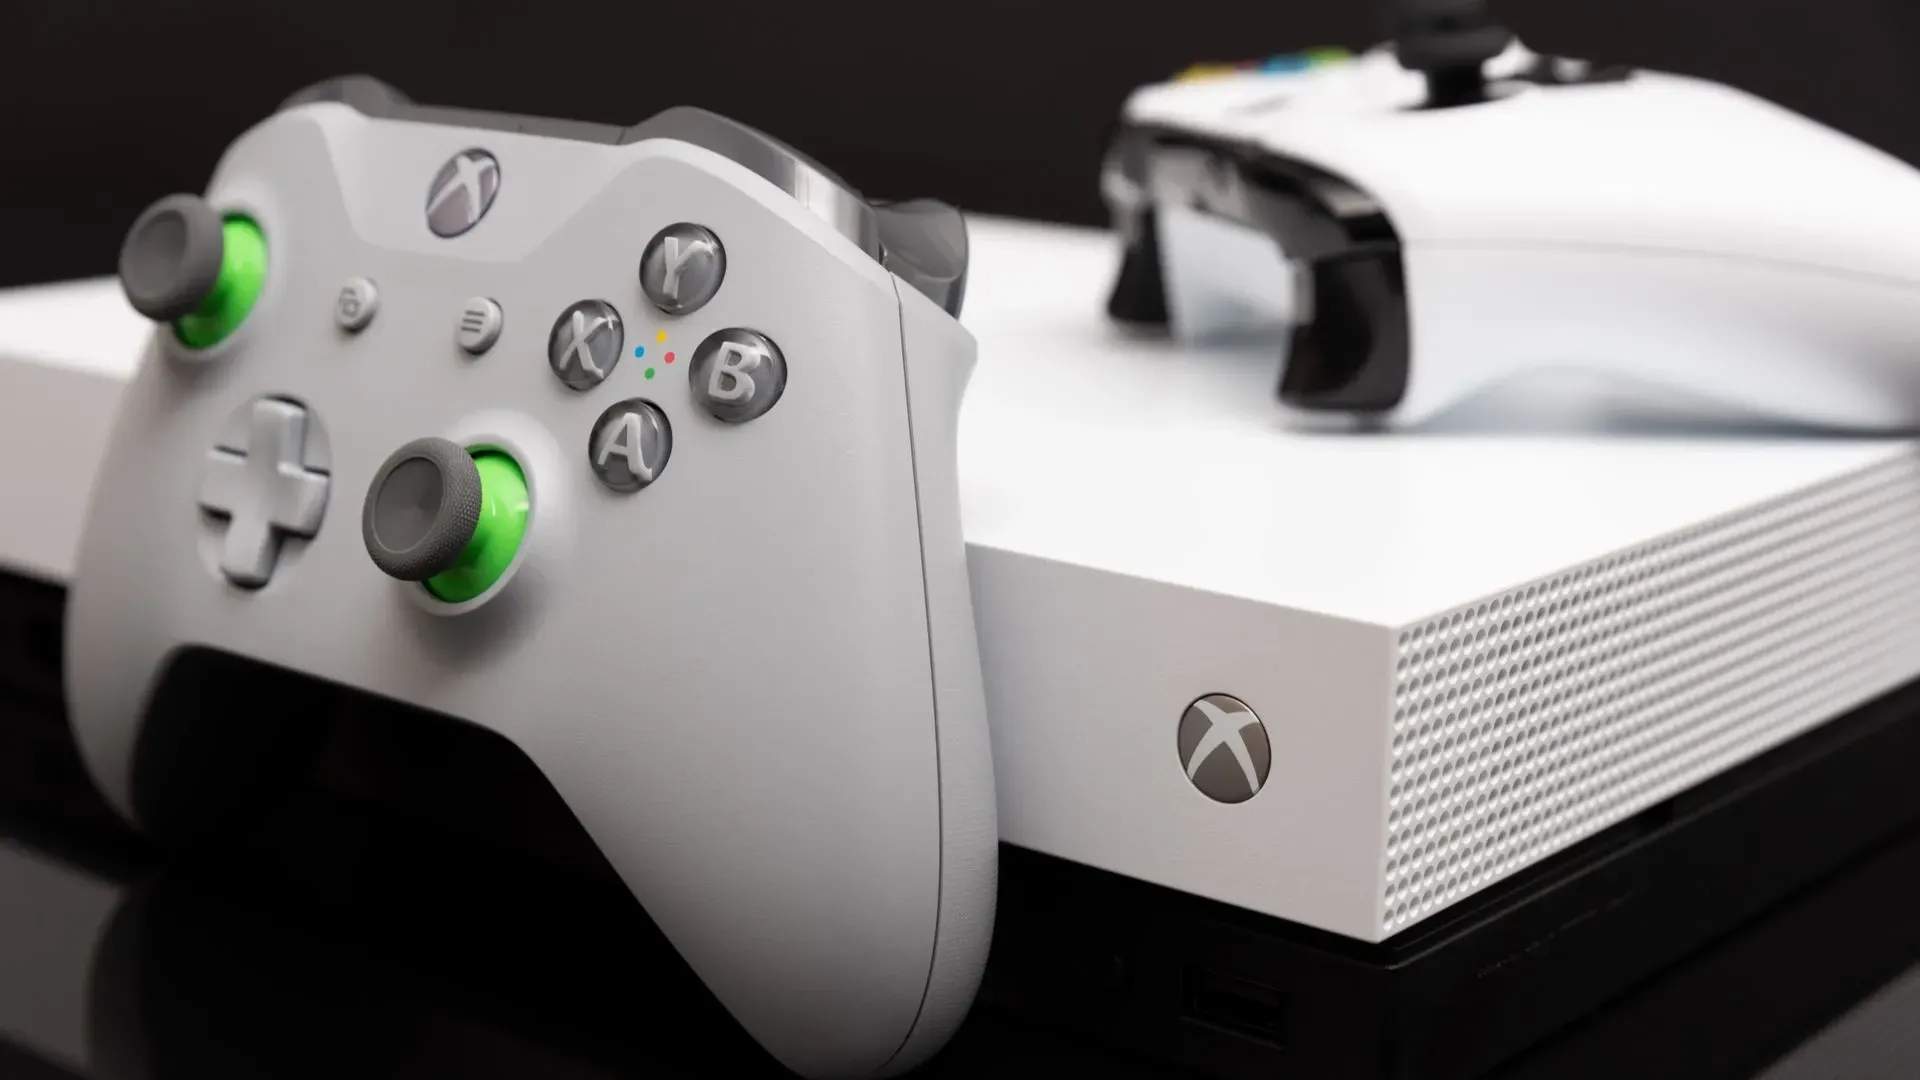 Xbox Brasil - Se você precisa de uma razão para assinar